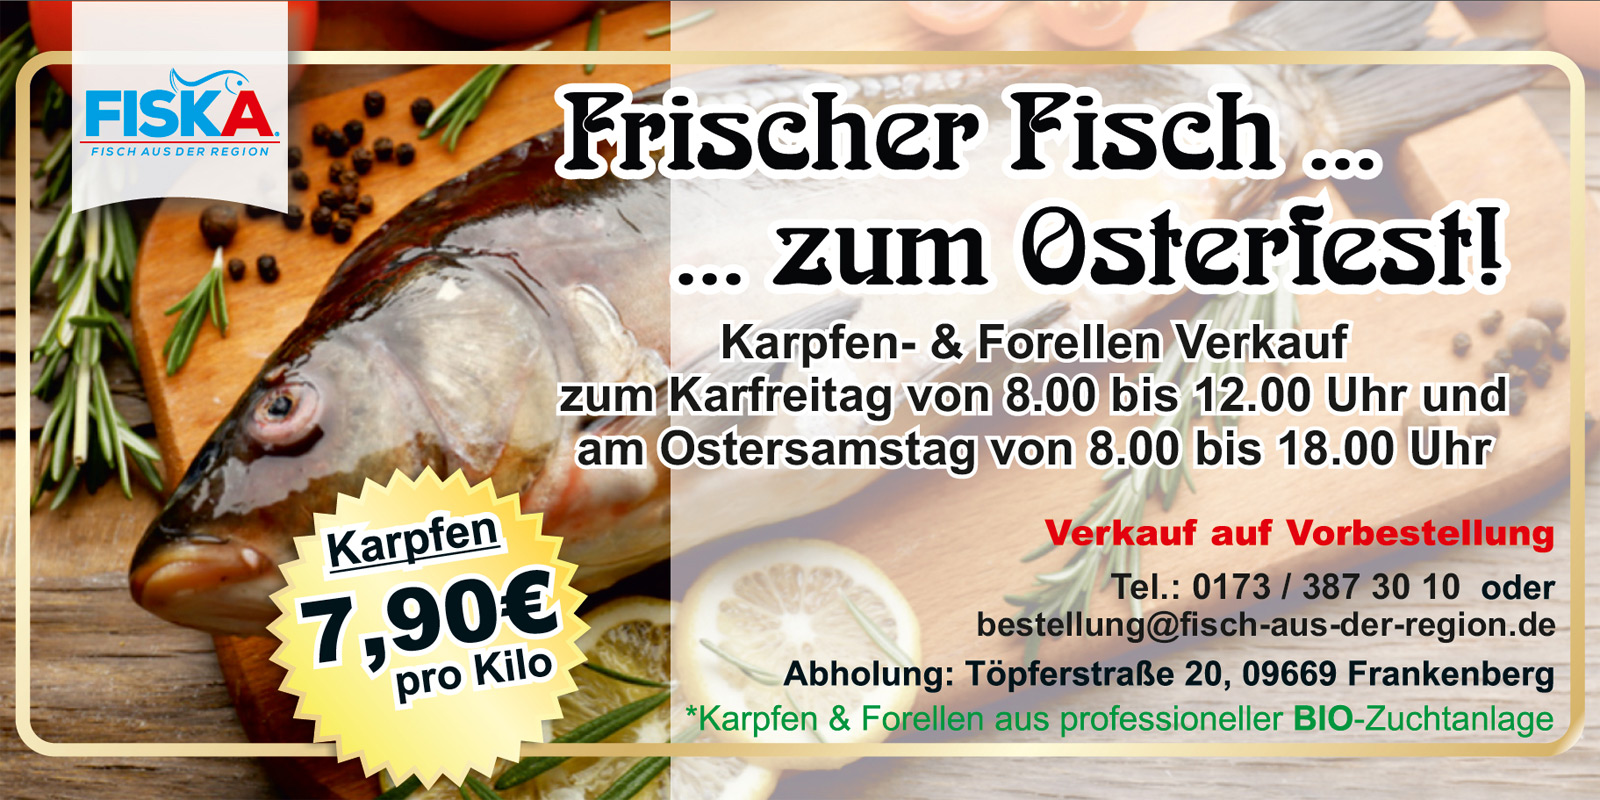 Fiska Fischverkauf für Chemnitz und Umgebung Ostern